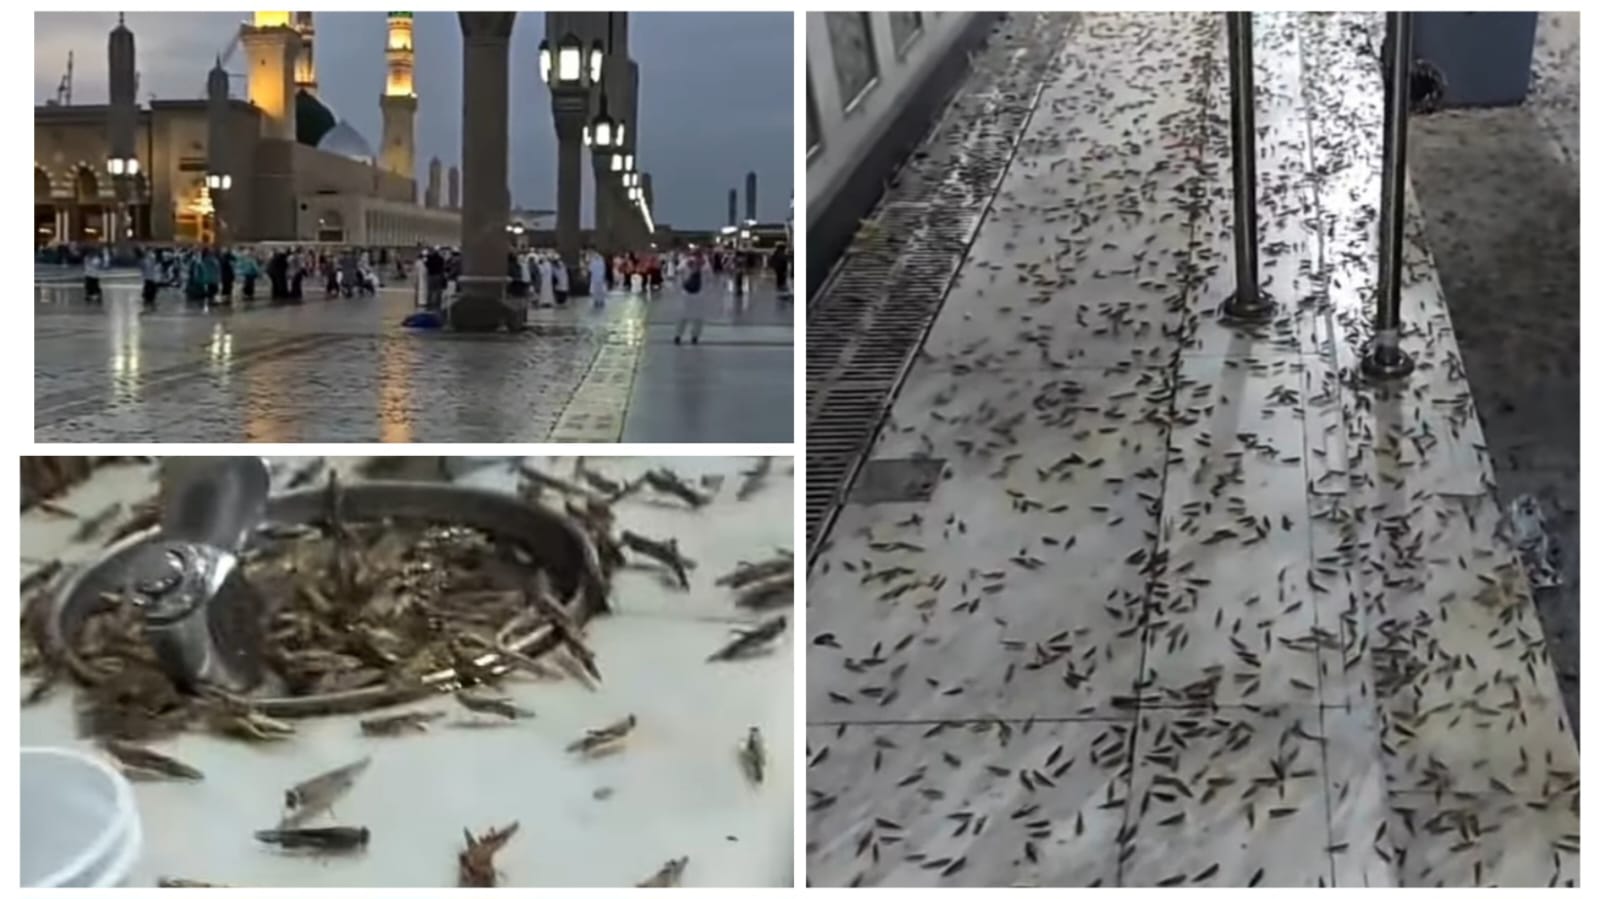 Jutaan Belalang Kembali Penuhi Sekitar Masjid Nabawi di Madinah, Masya Allah Pertanda Apa Ini?